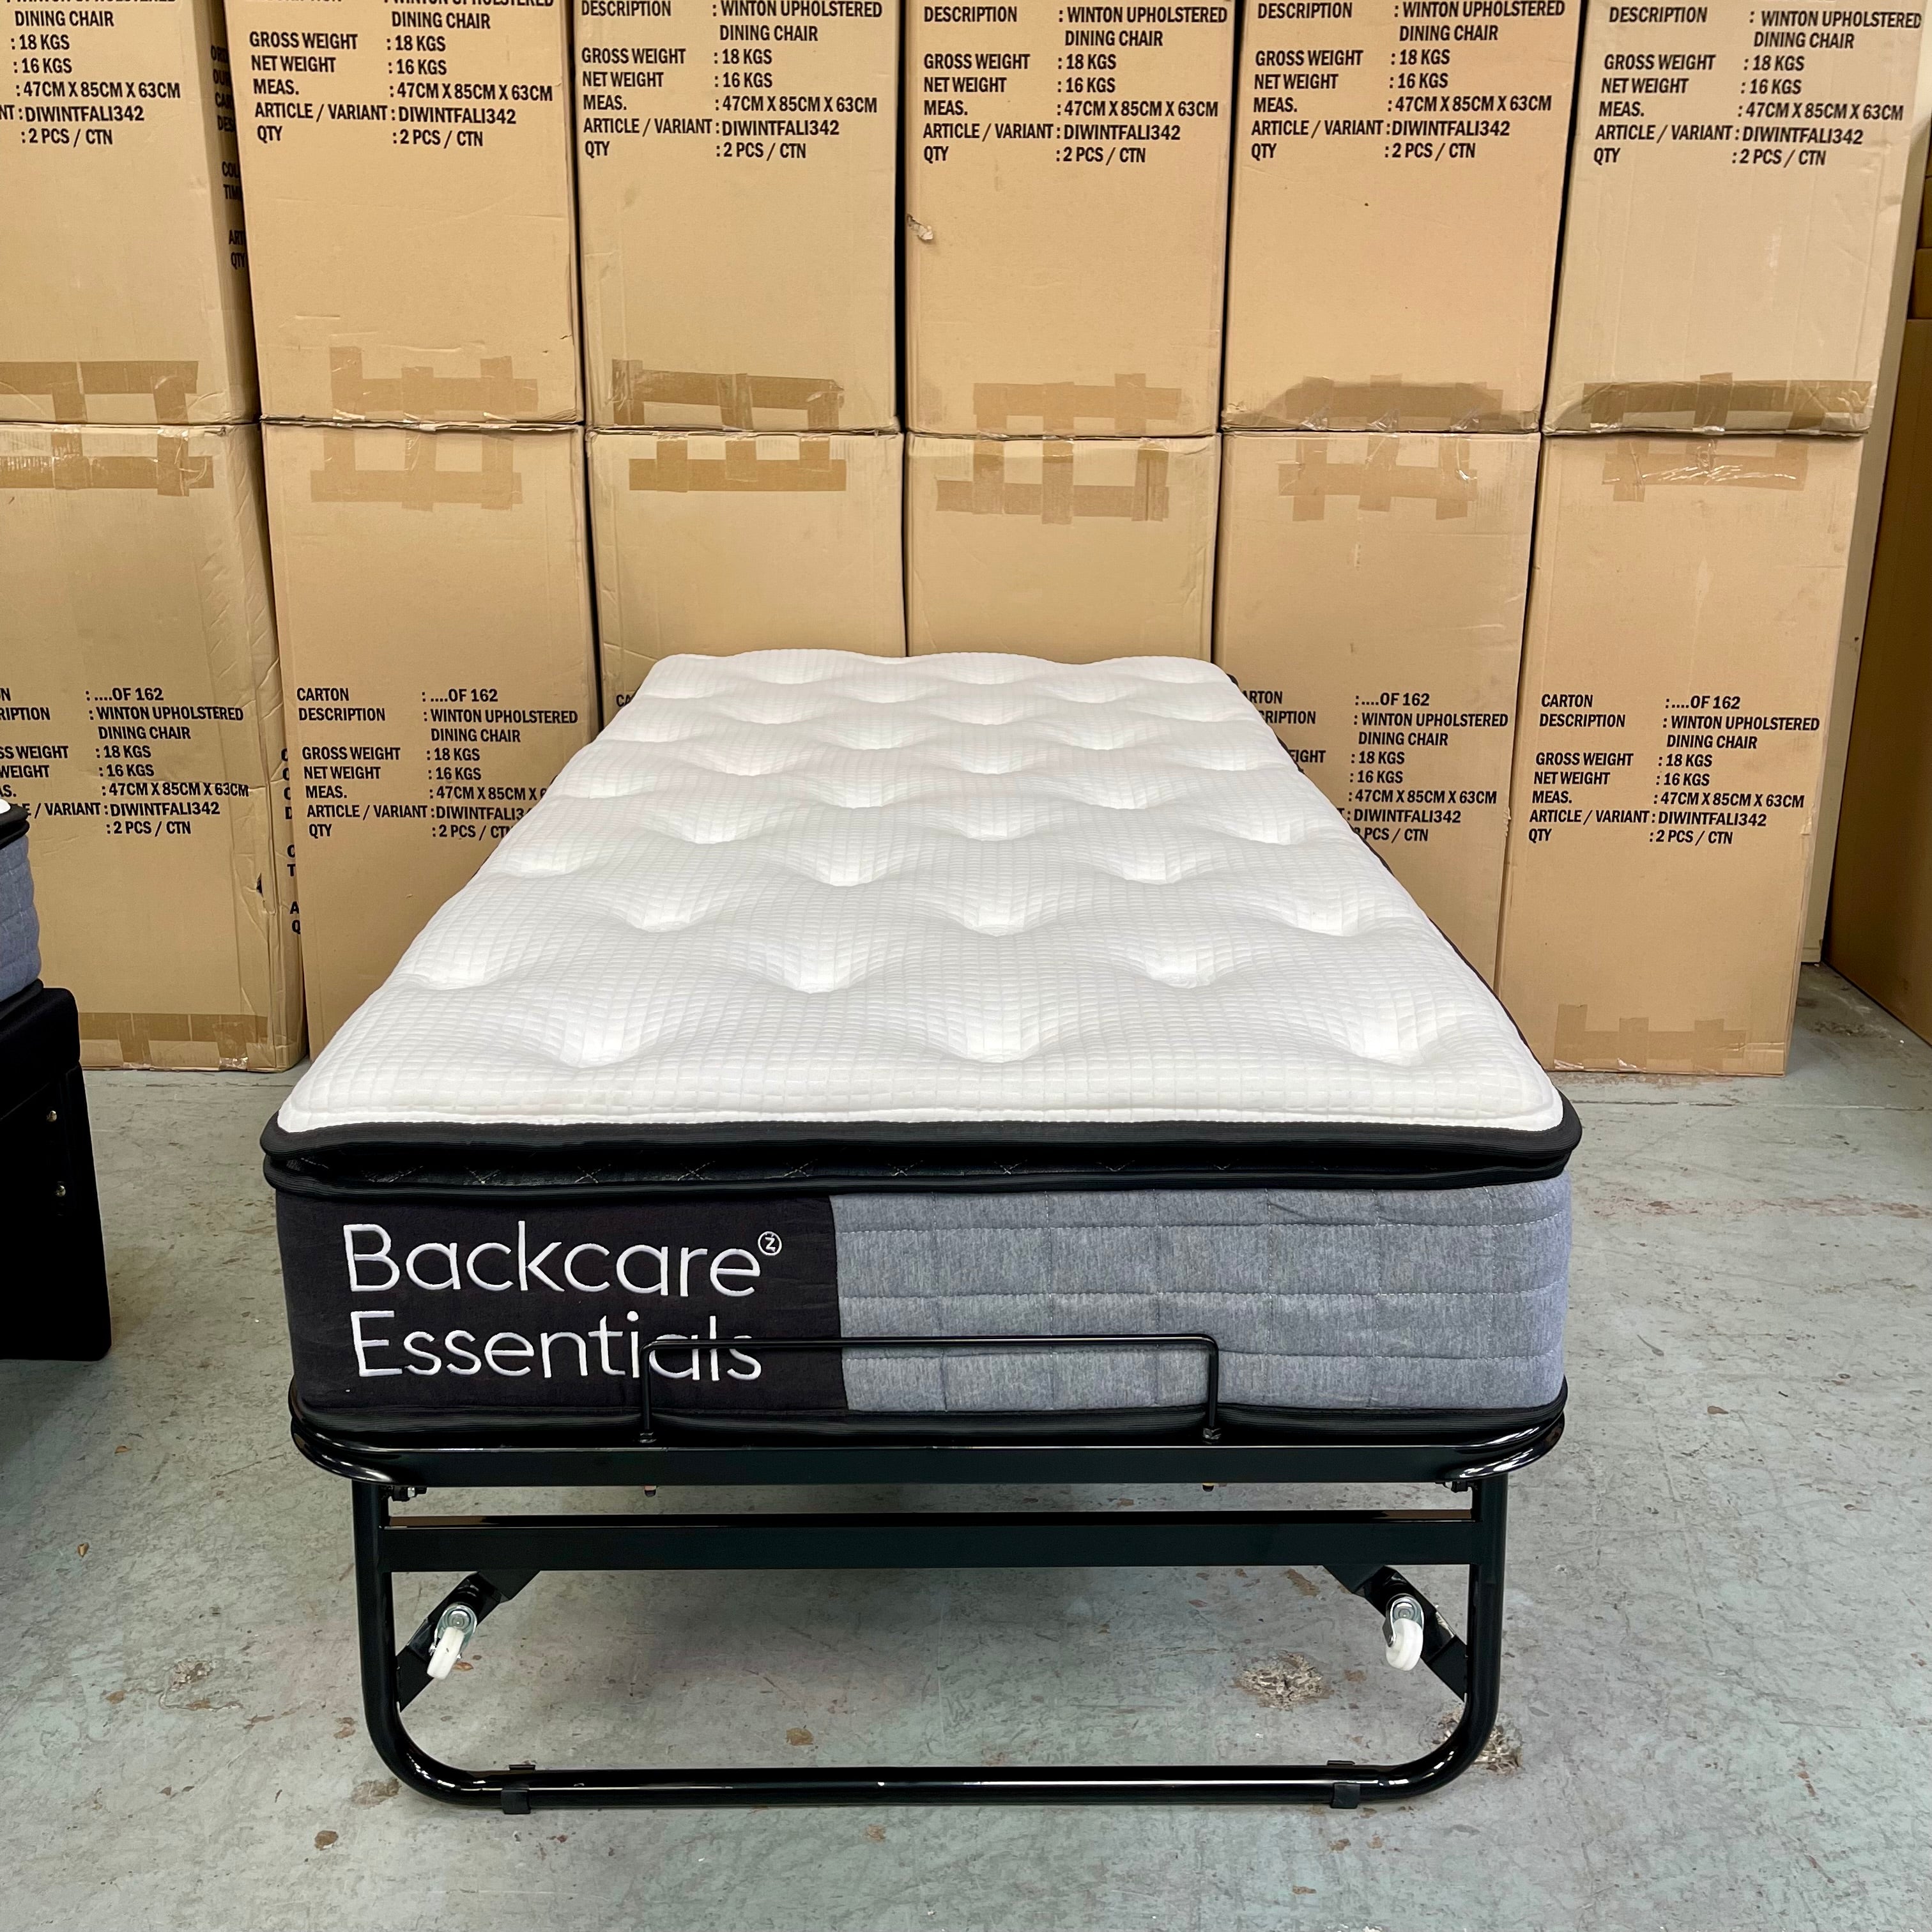 Backcare Trundler Bed set with Pocket Spring Mattresses